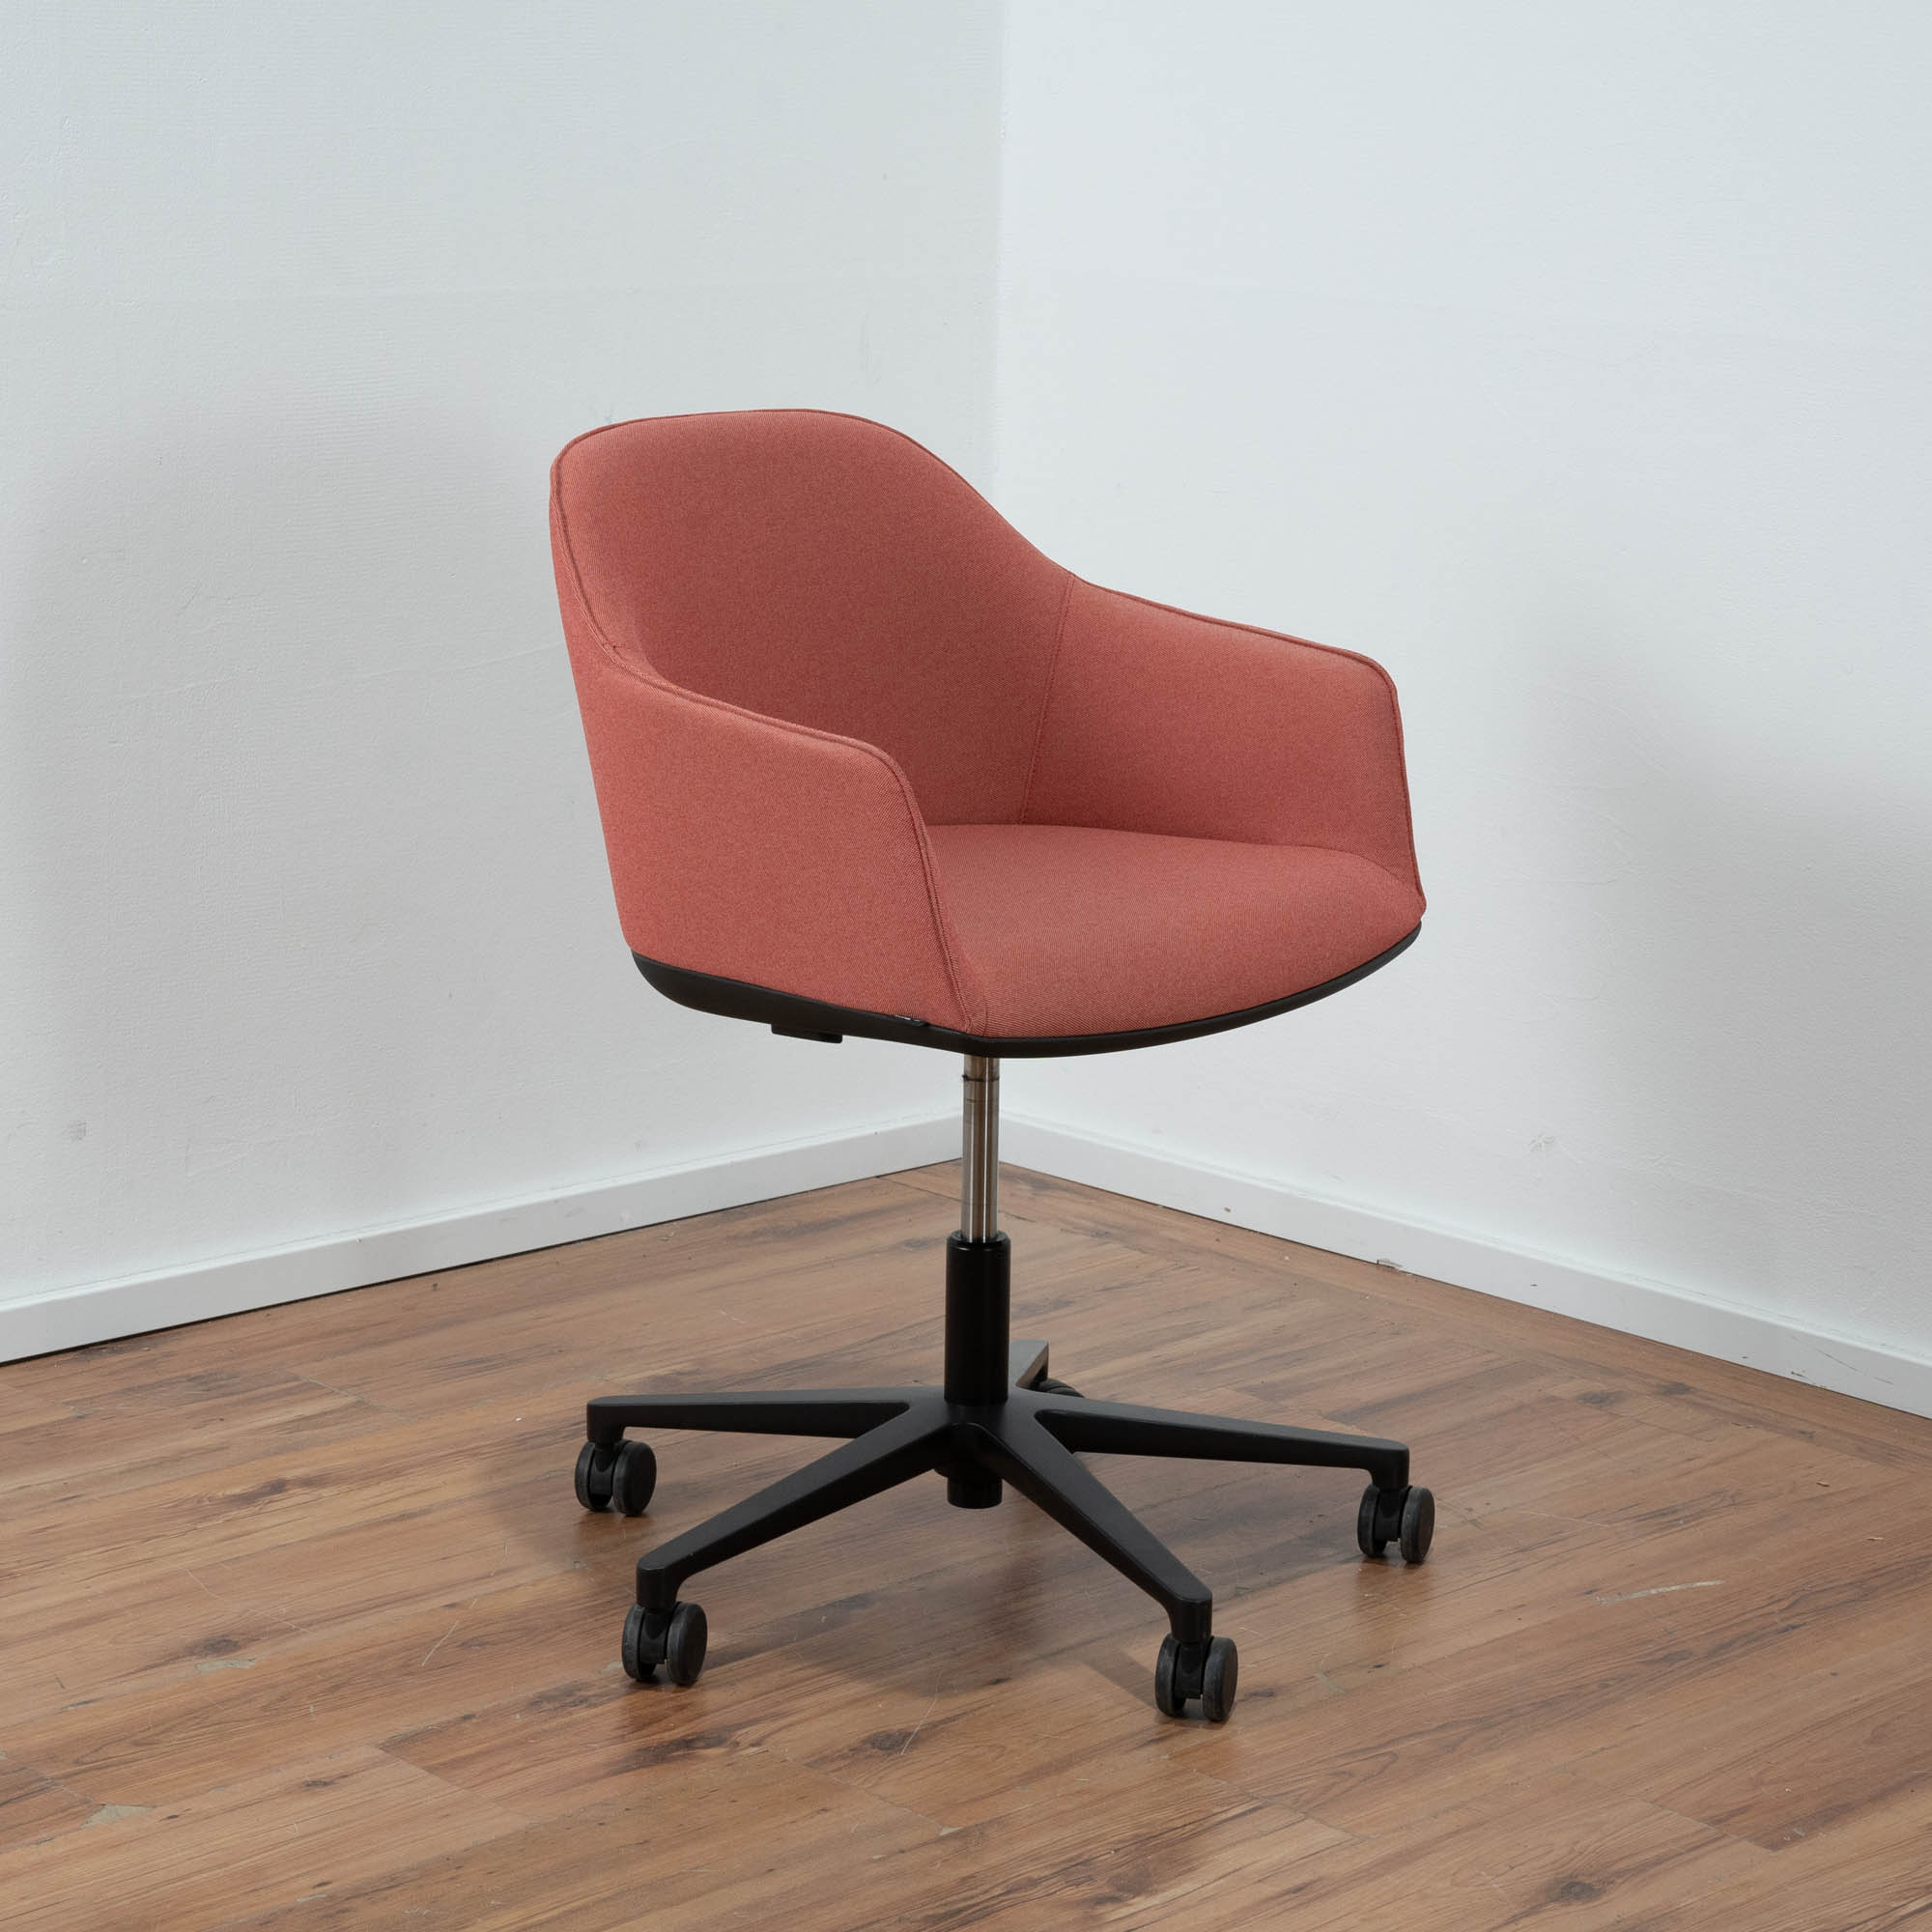 Vitra Softshell Konferenzstuhl - Lachsfarben - Schalensitz auf Rollen - Gestell schwarz